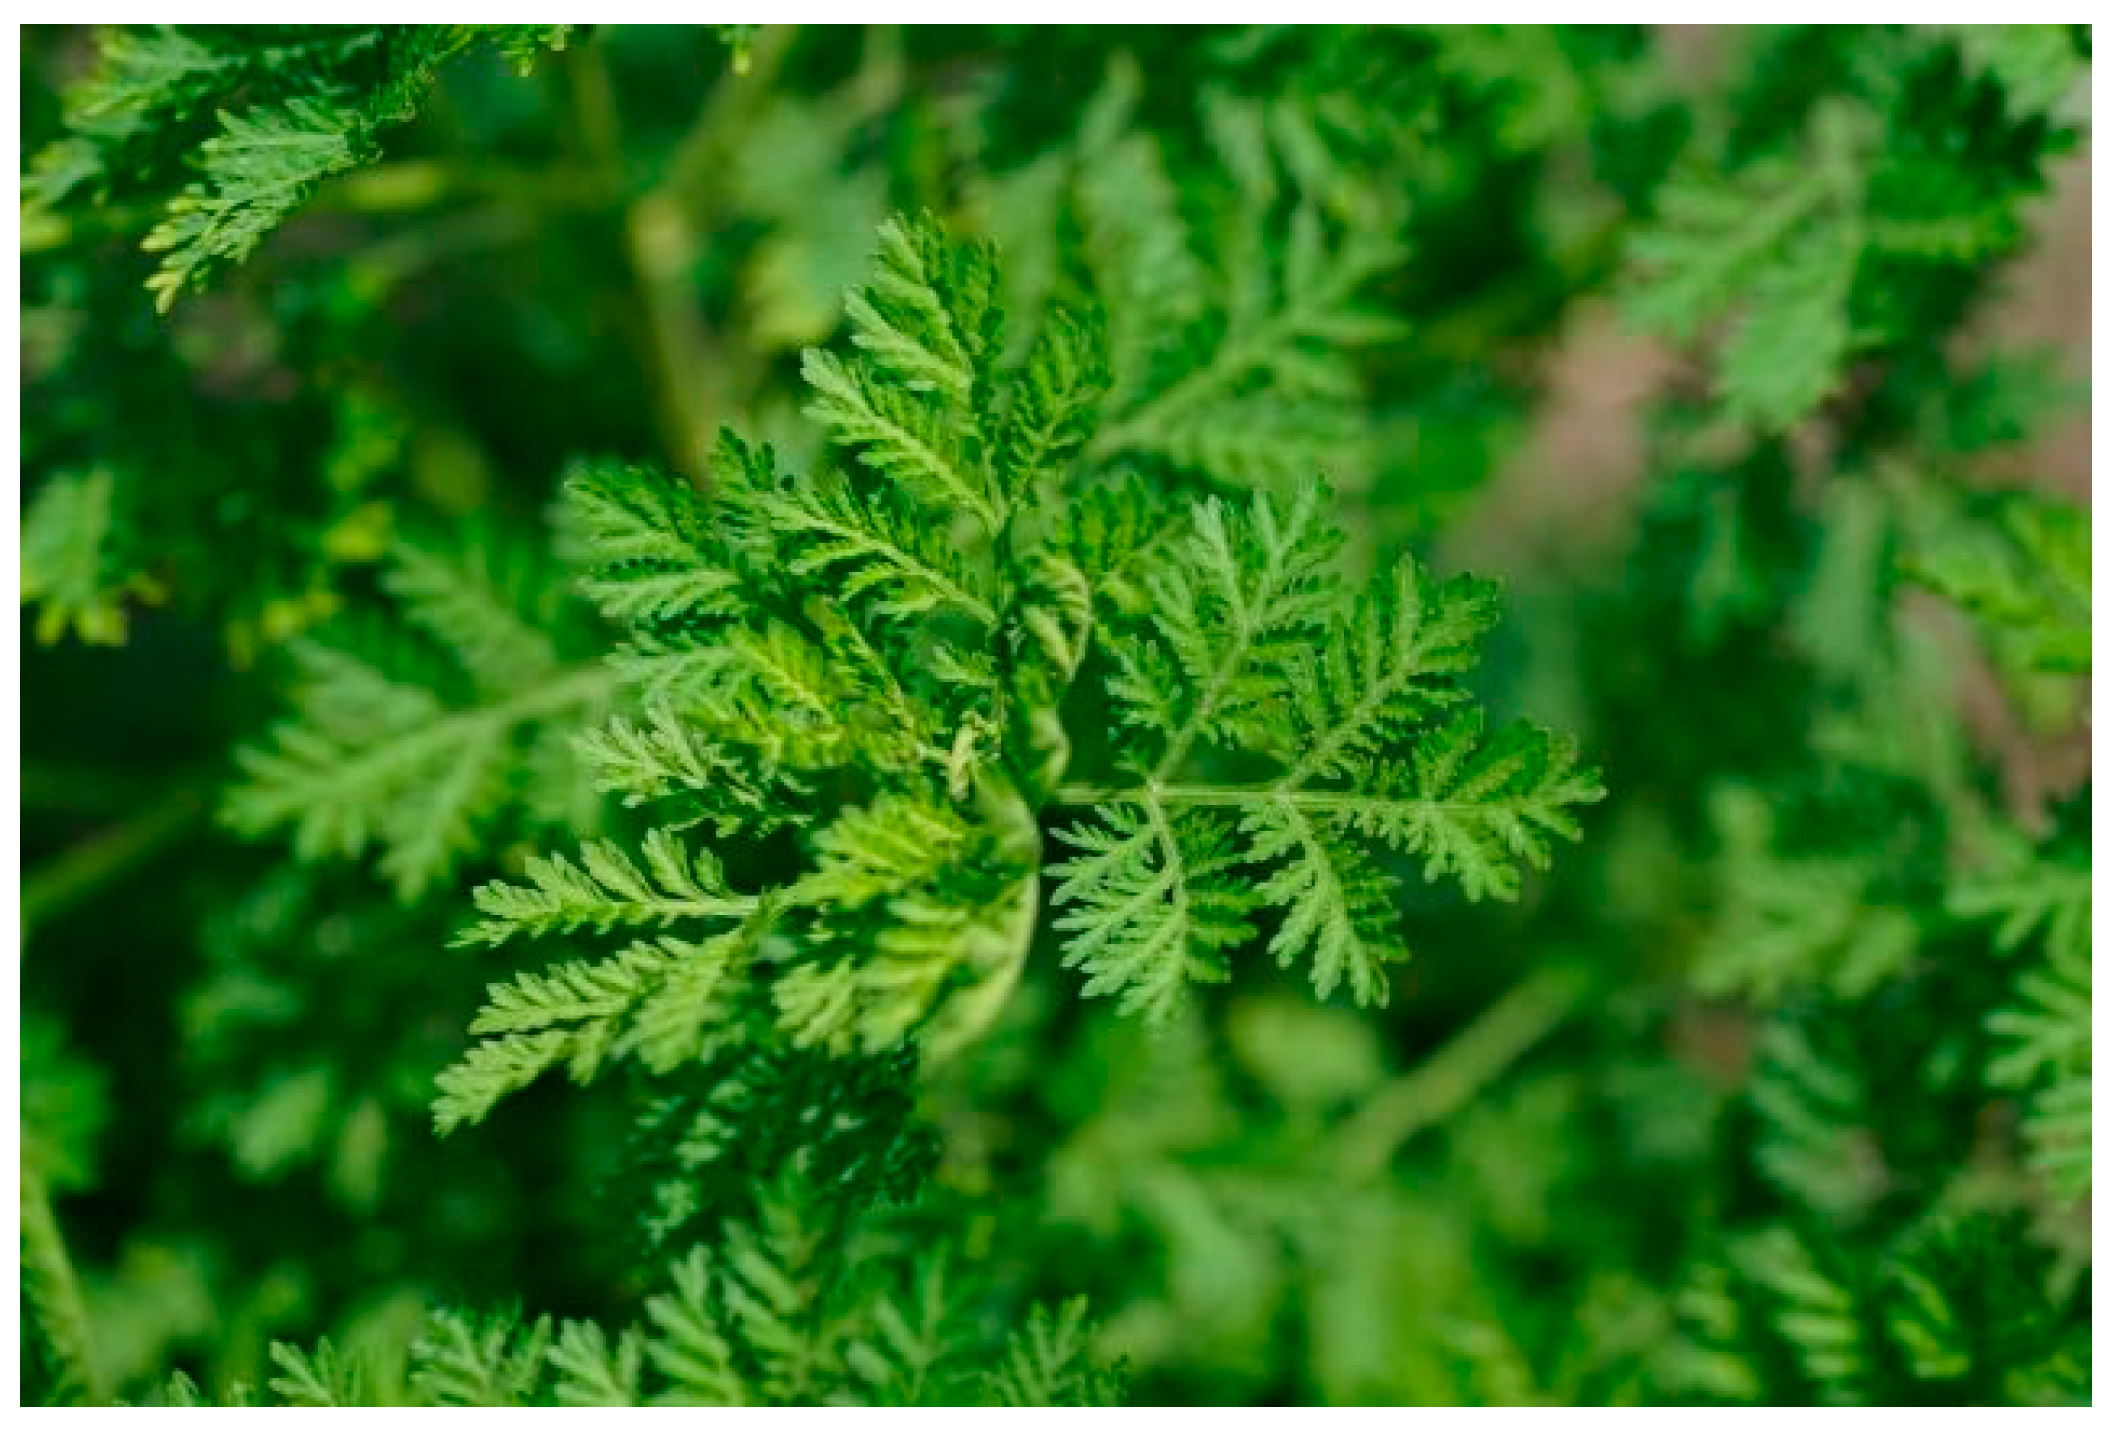 Artemisia annua leaf powder cures resistant malaria - ESCOP